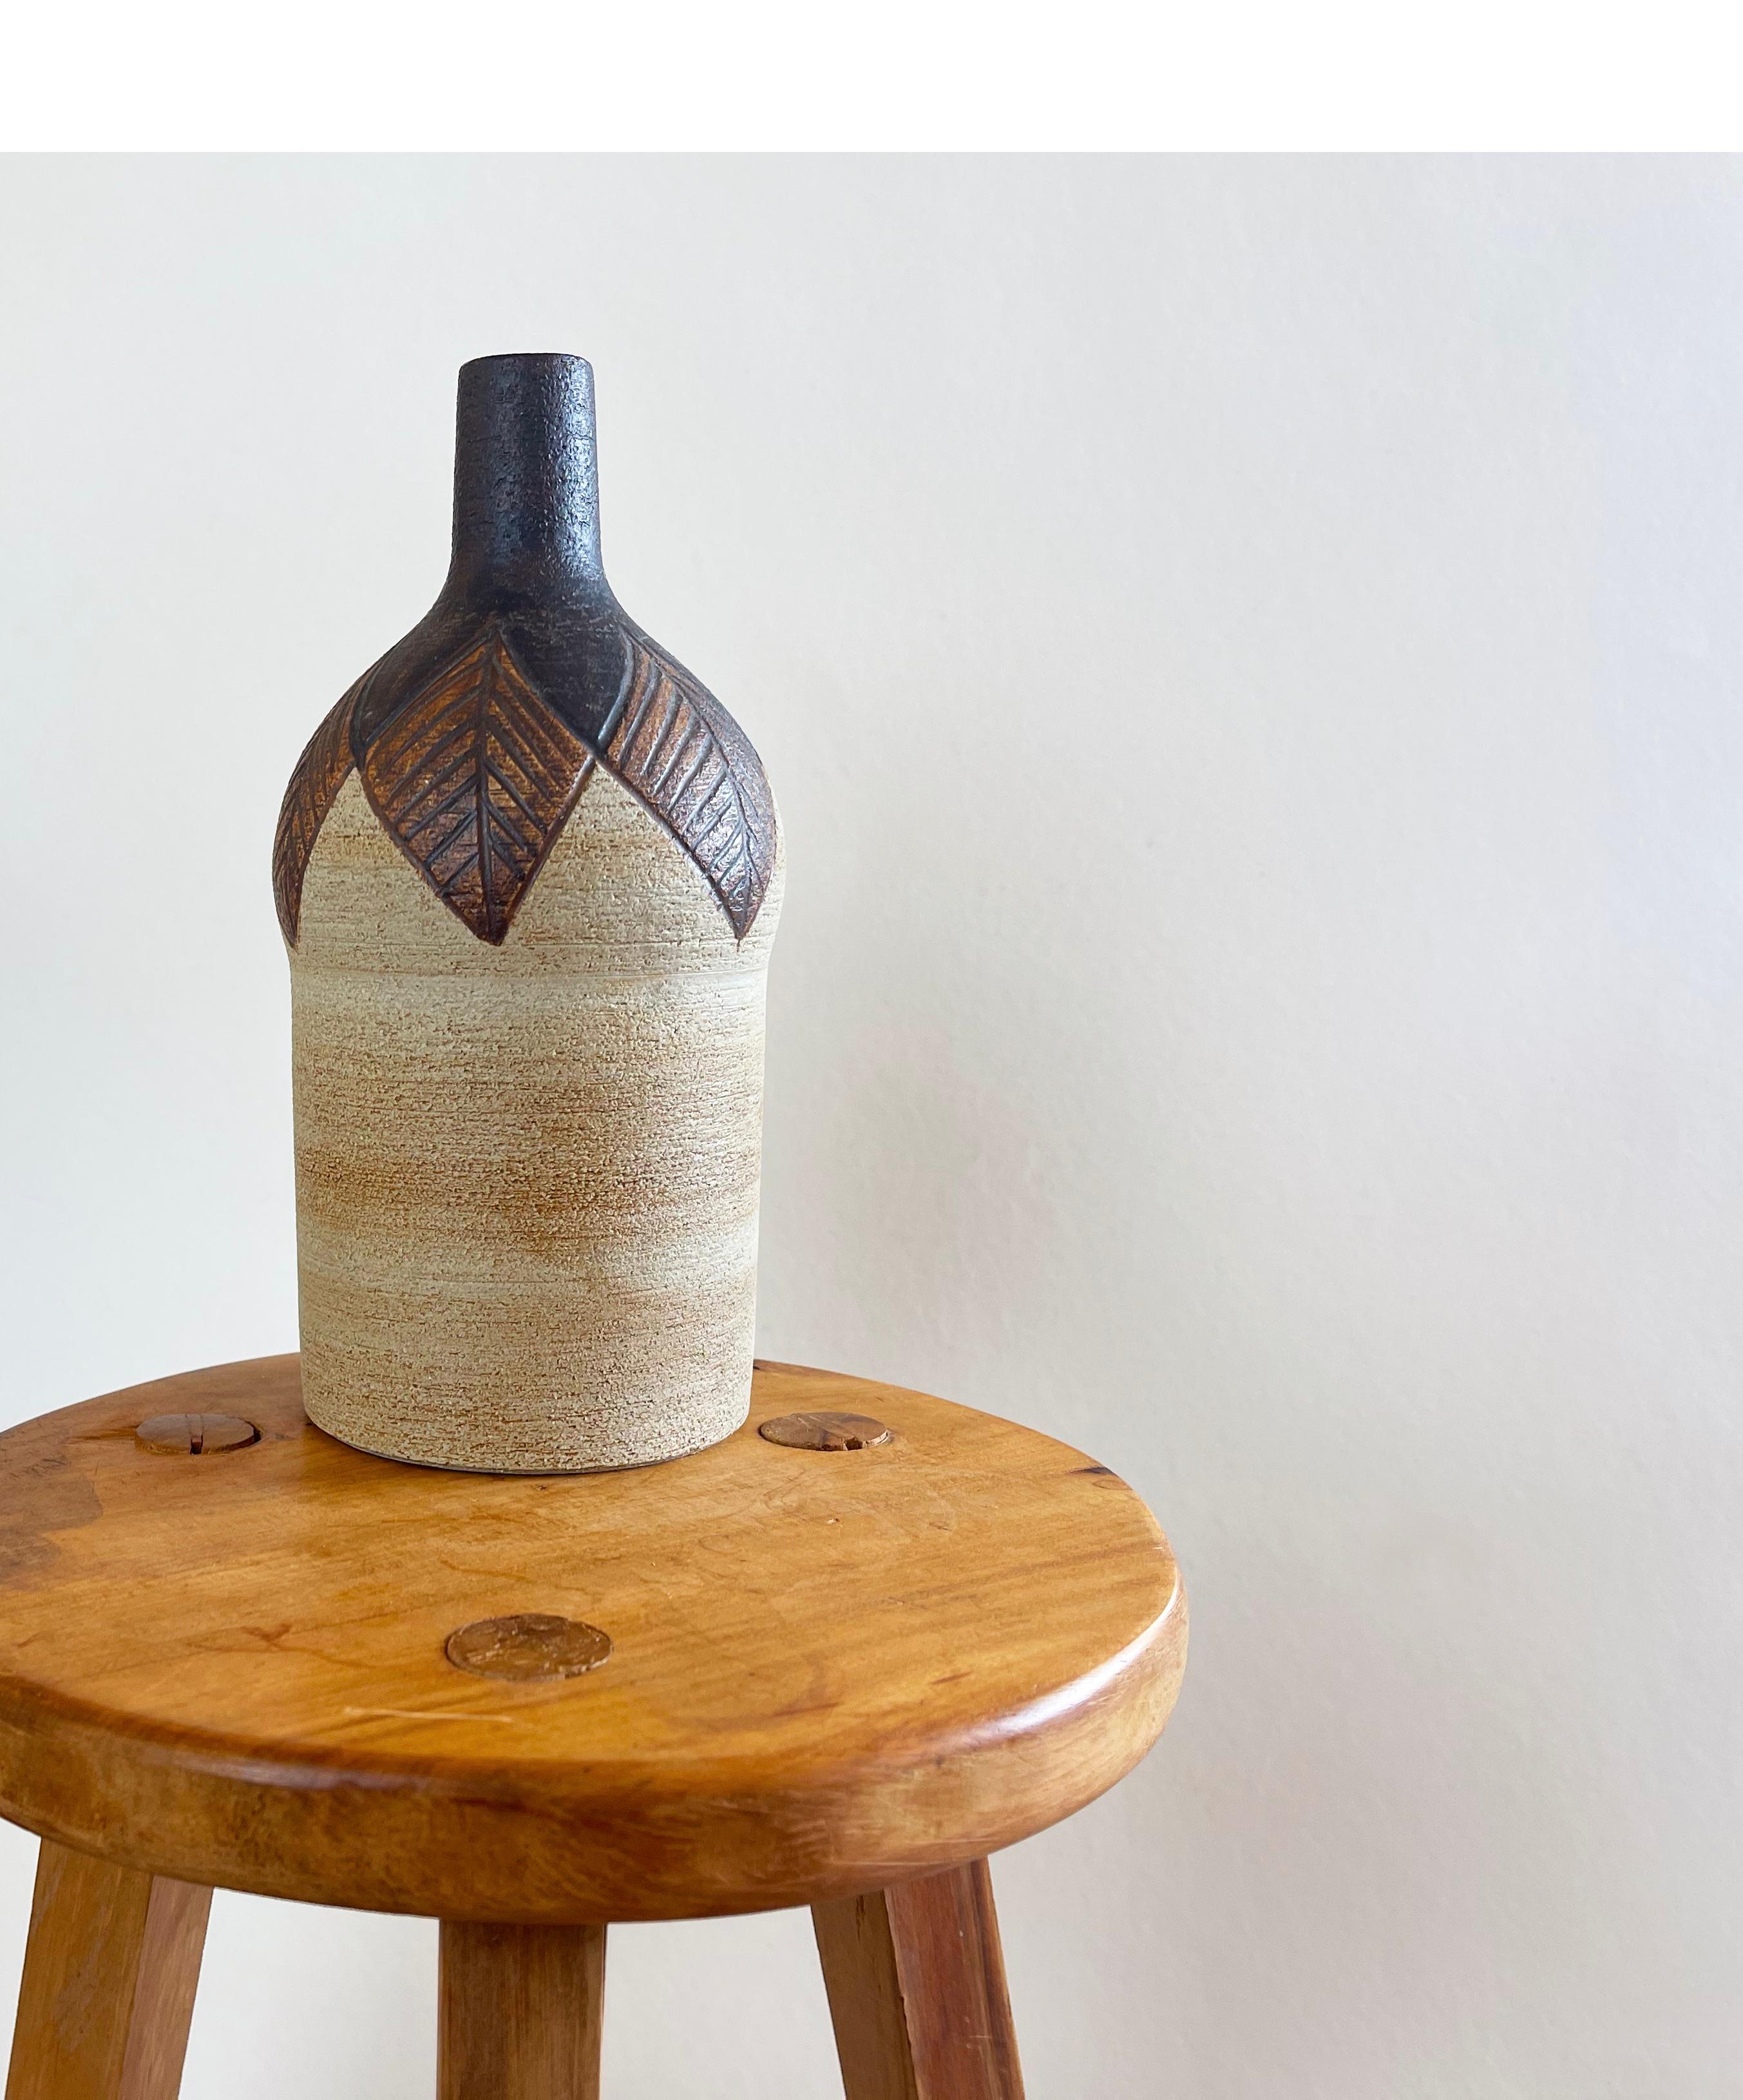 Ausdrucksstarke Vase aus Steingut im skandinavischen Stil, handgefertigt von der deutschen Keramikmanufaktur ''Sgrafo Modern''. 
Dieses Werk wird dem Künstler Peter Müller zugeschrieben.
Handgemalte und geformte große grafische Blätter einer